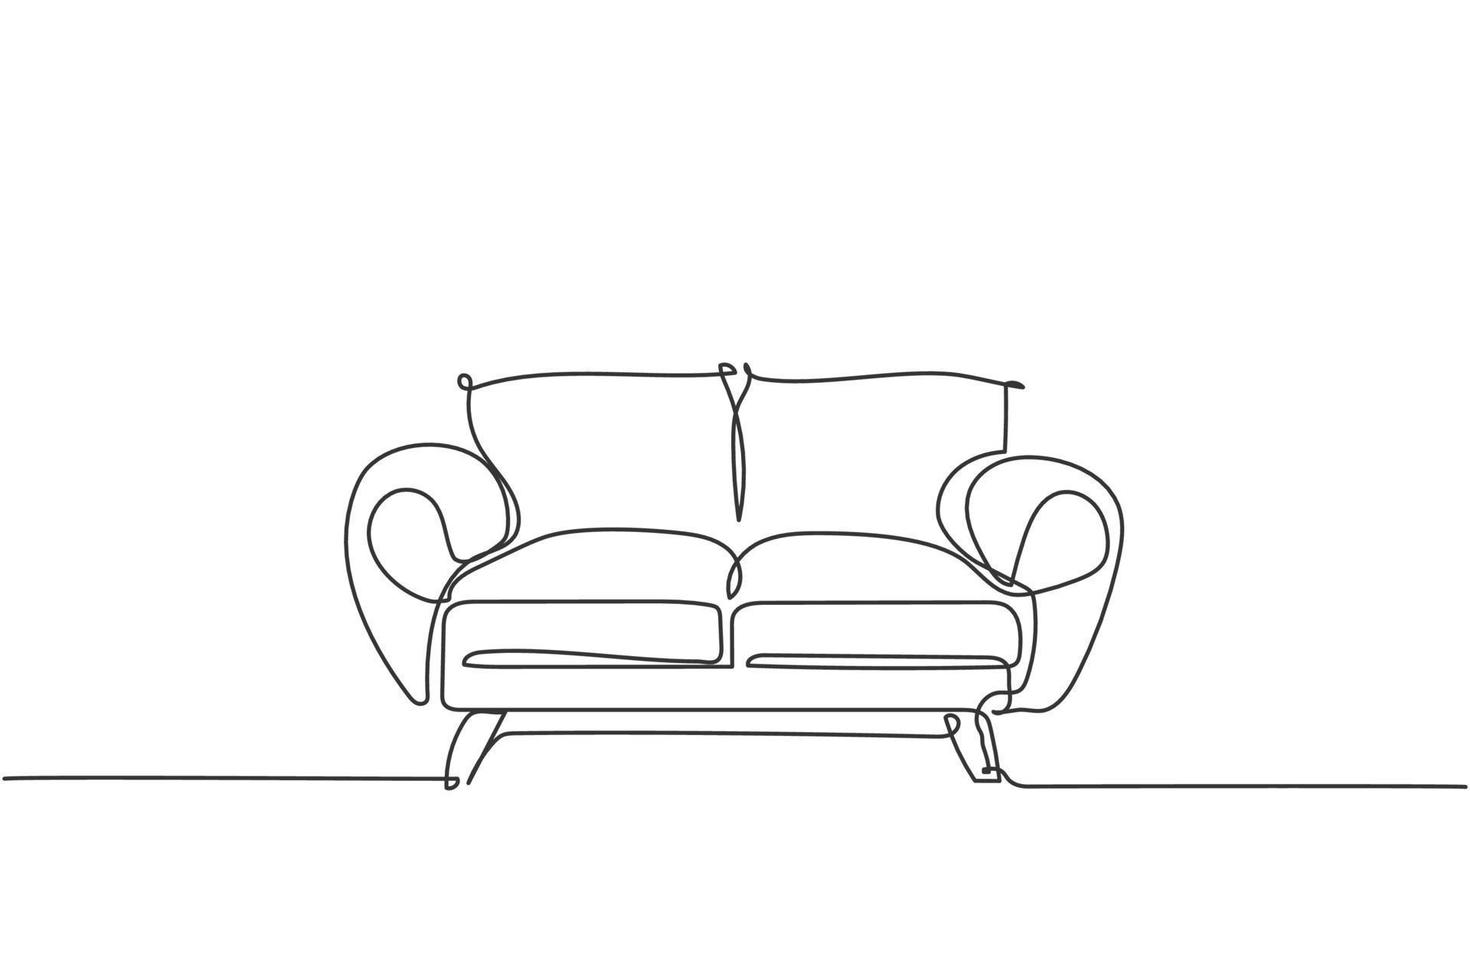 um único desenho de linha de um eletrodoméstico de sofá de luxo caro. elegância sofá confortável para o conceito de equipamento de móveis de sala de estar. linha contínua dinâmica desenhar design gráfico ilustração vetorial vetor